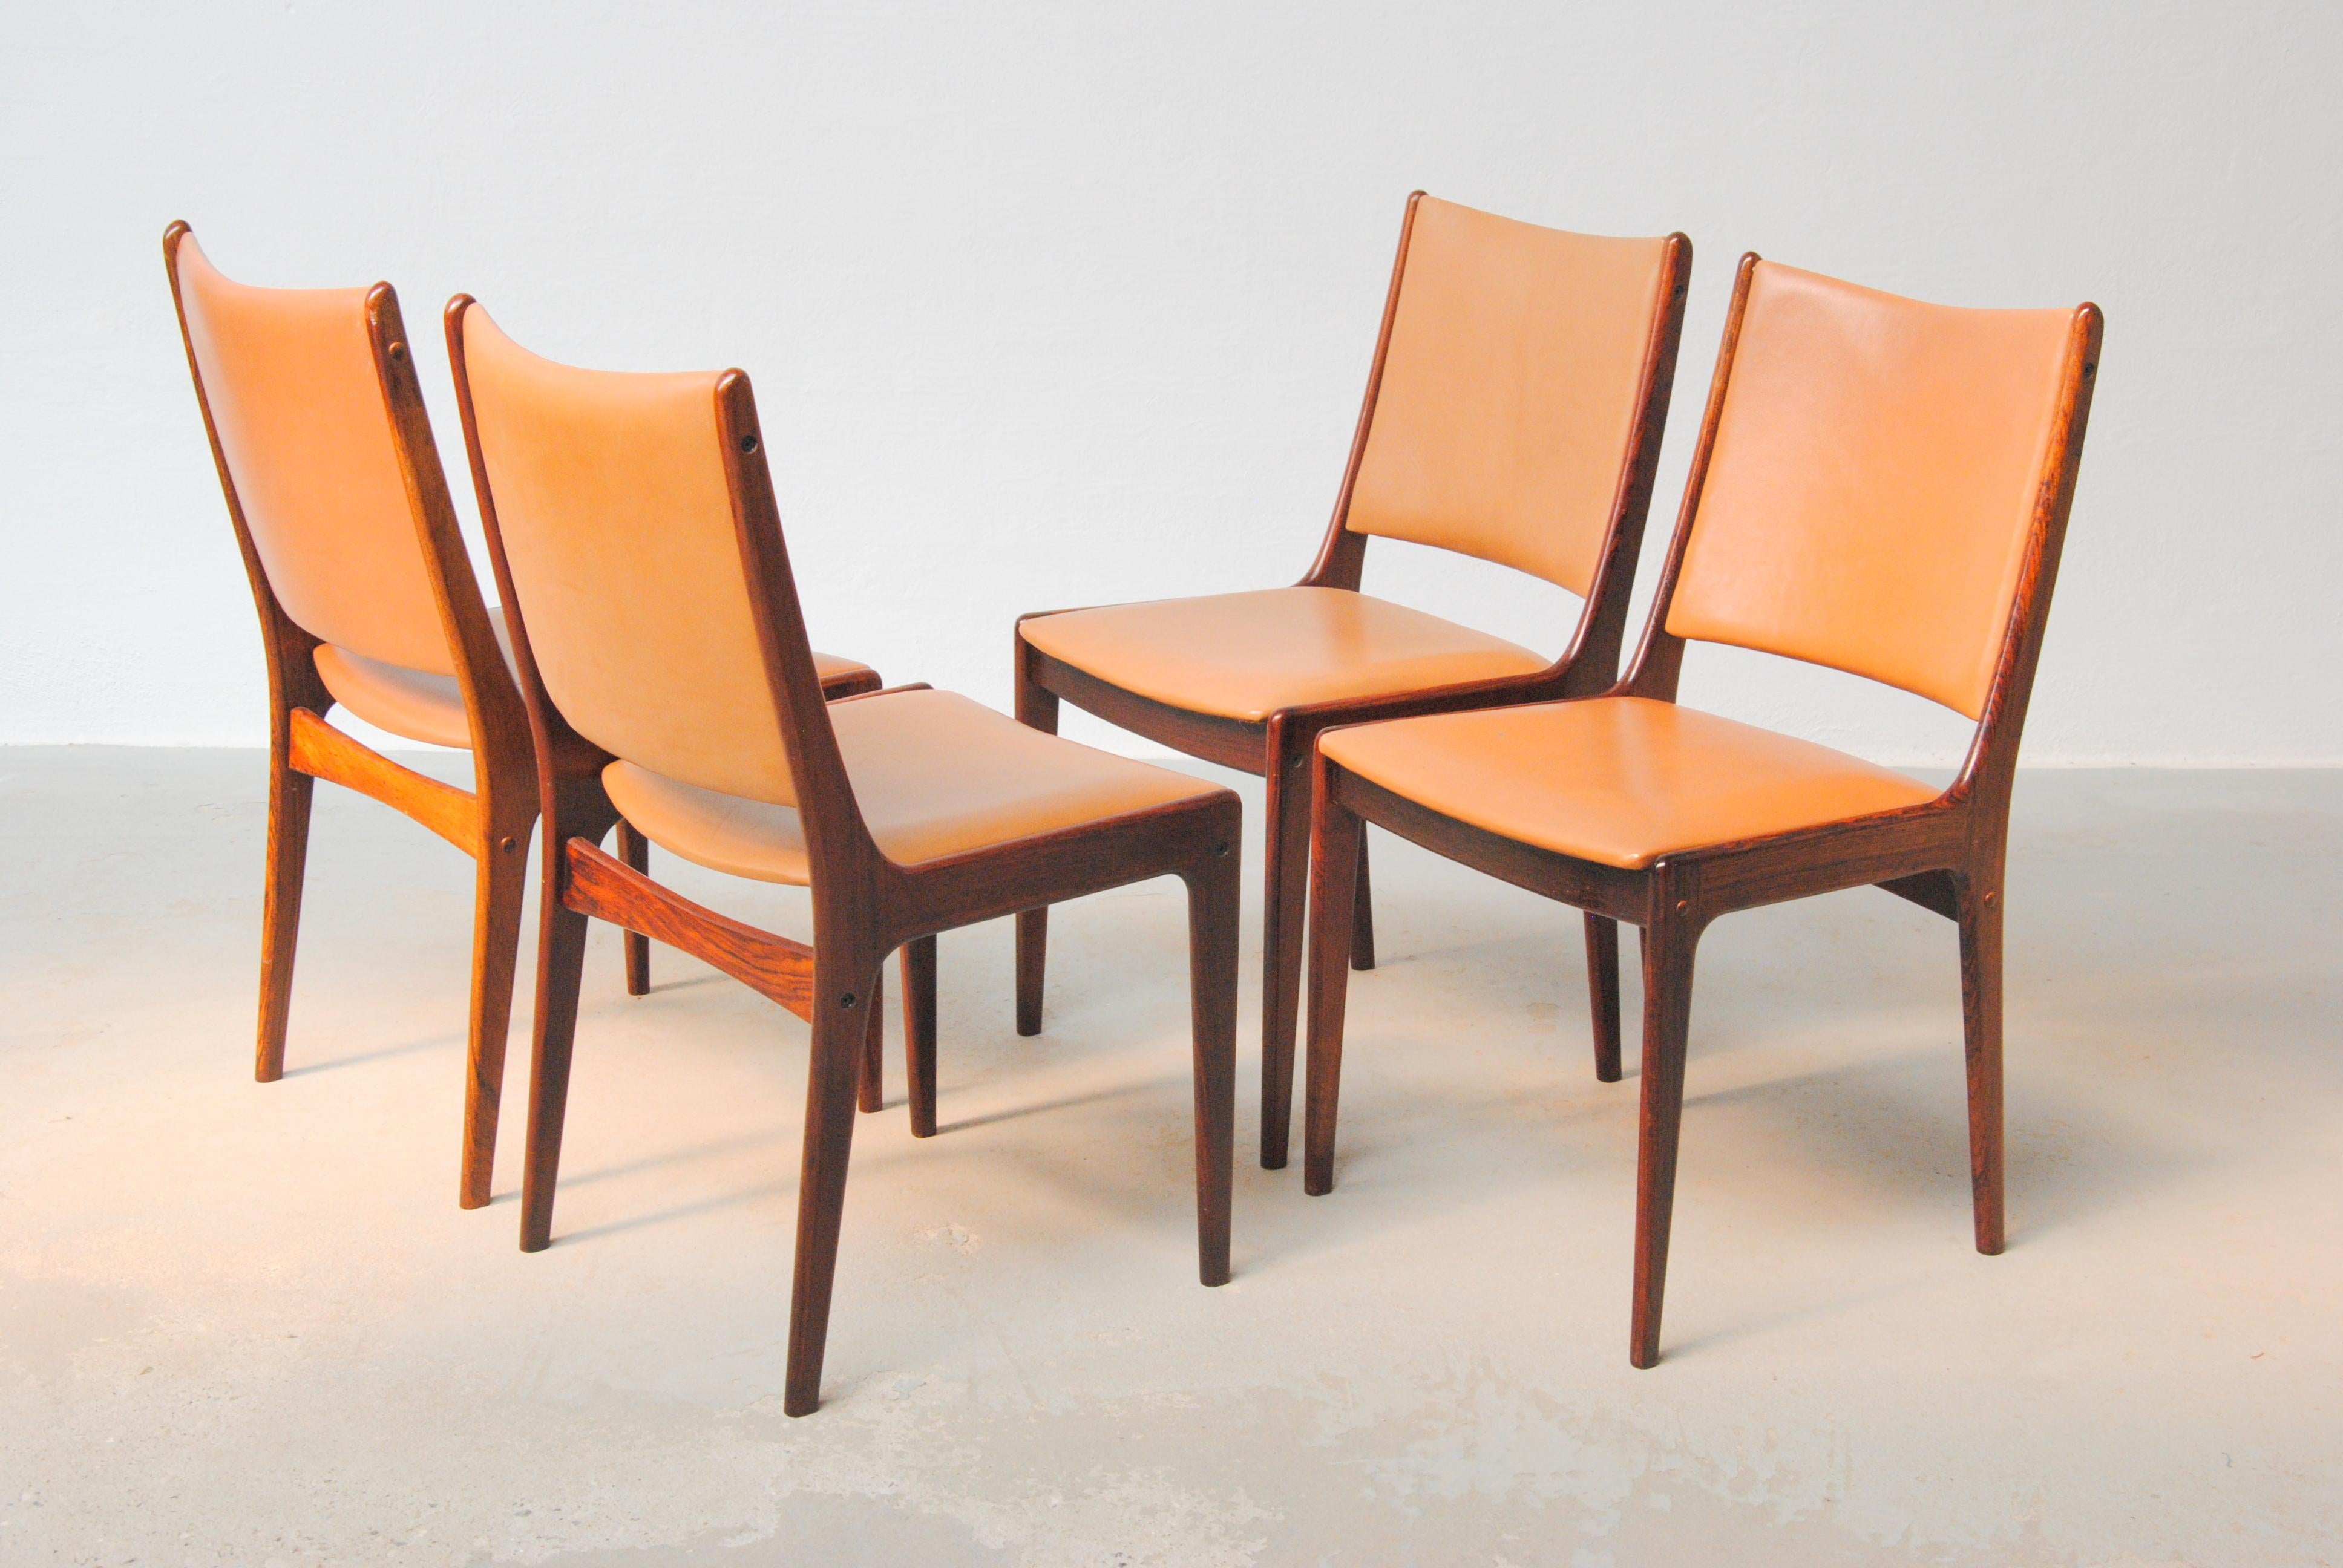 Ensemble de quatre chaises de salle à manger Johannes Andersen des années 1960 en bois de rose, entièrement restaurées, fabriquées par Uldum Møbler, Danemark.

L'ensemble de chaises de salle à manger présente un design simple et élégant qui